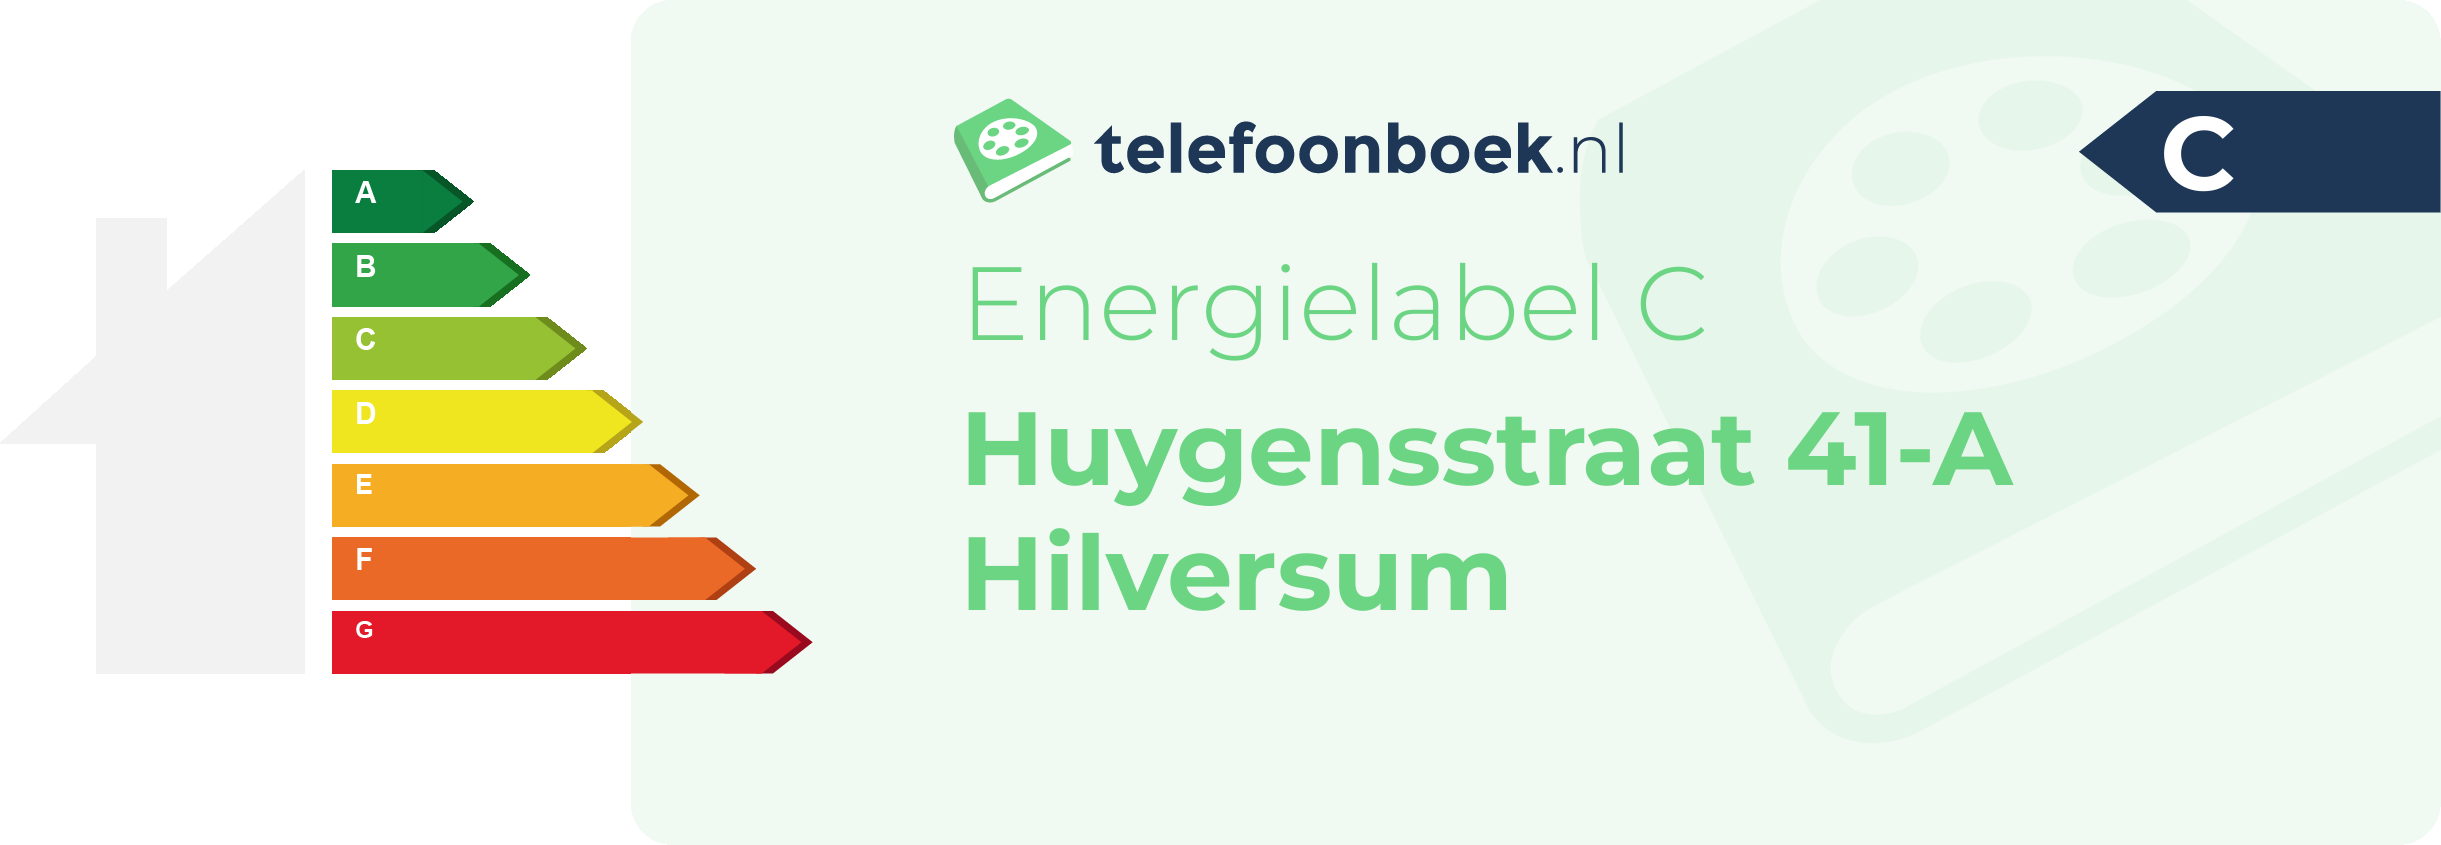 Energielabel Huygensstraat 41-A Hilversum